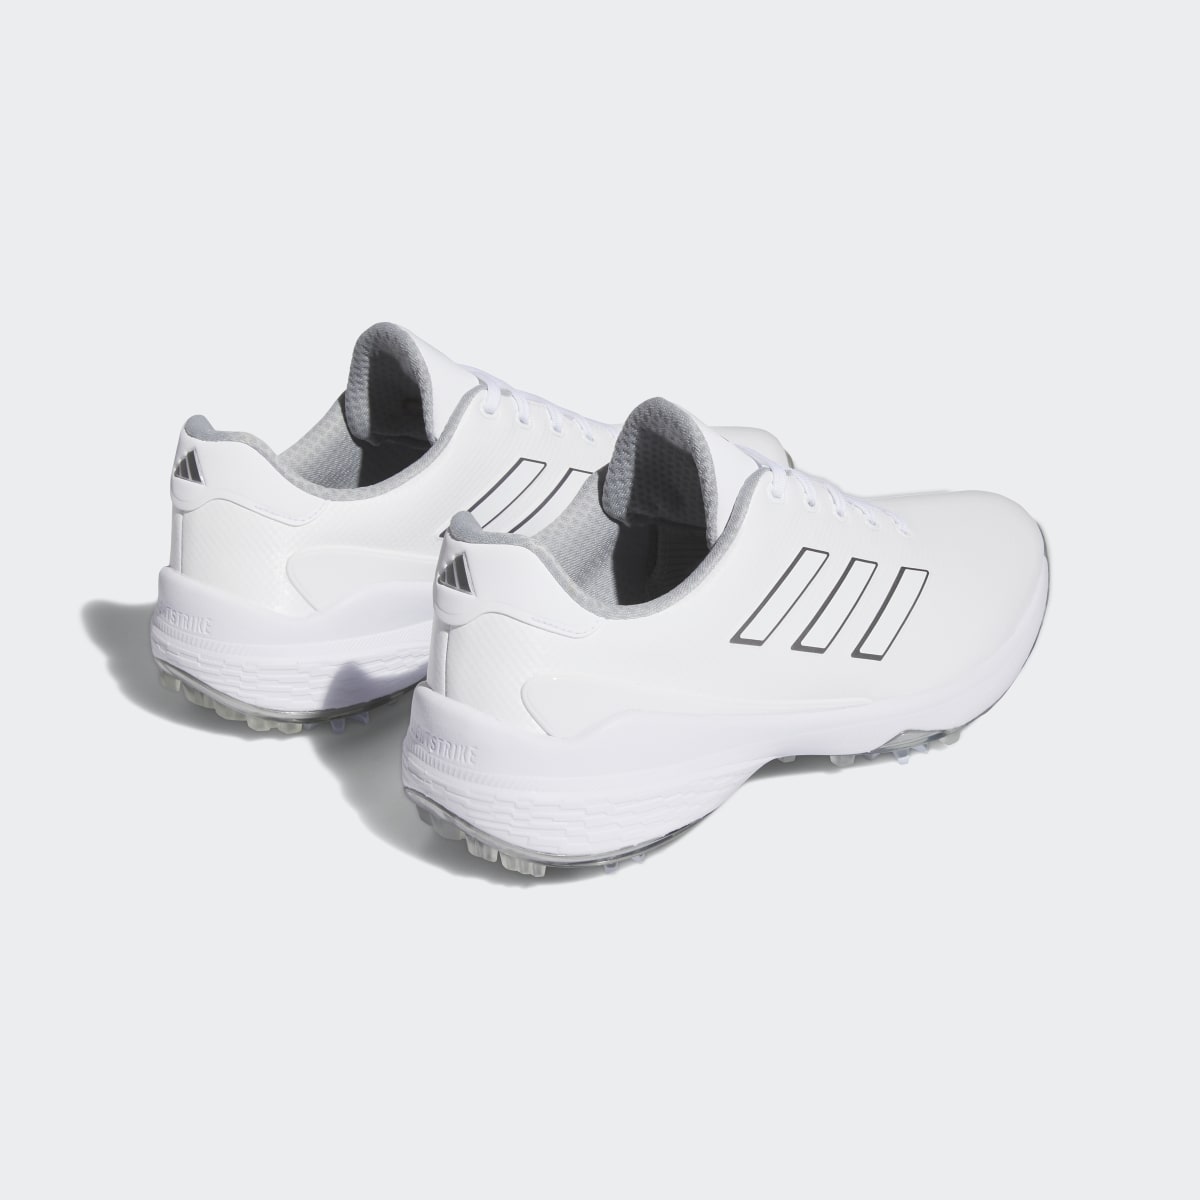 Adidas ZG23 Golf Shoes. 6